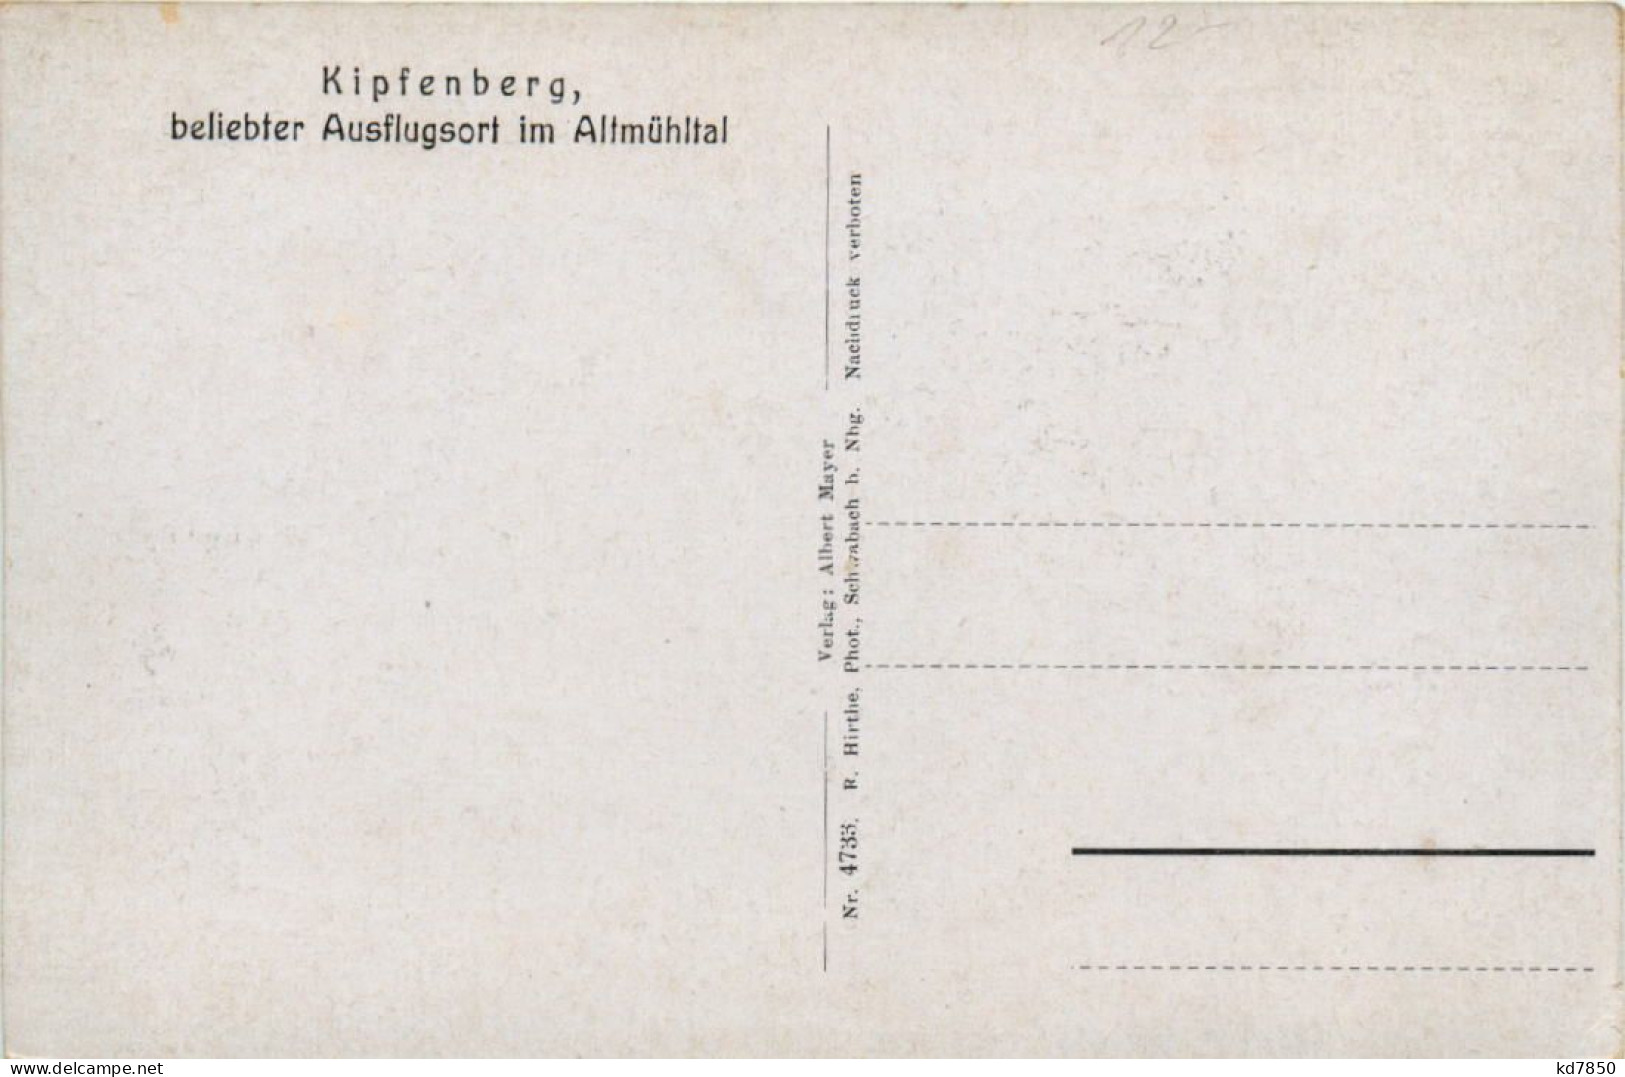 Kipfenberg Im Altmühltal - Eichstaett